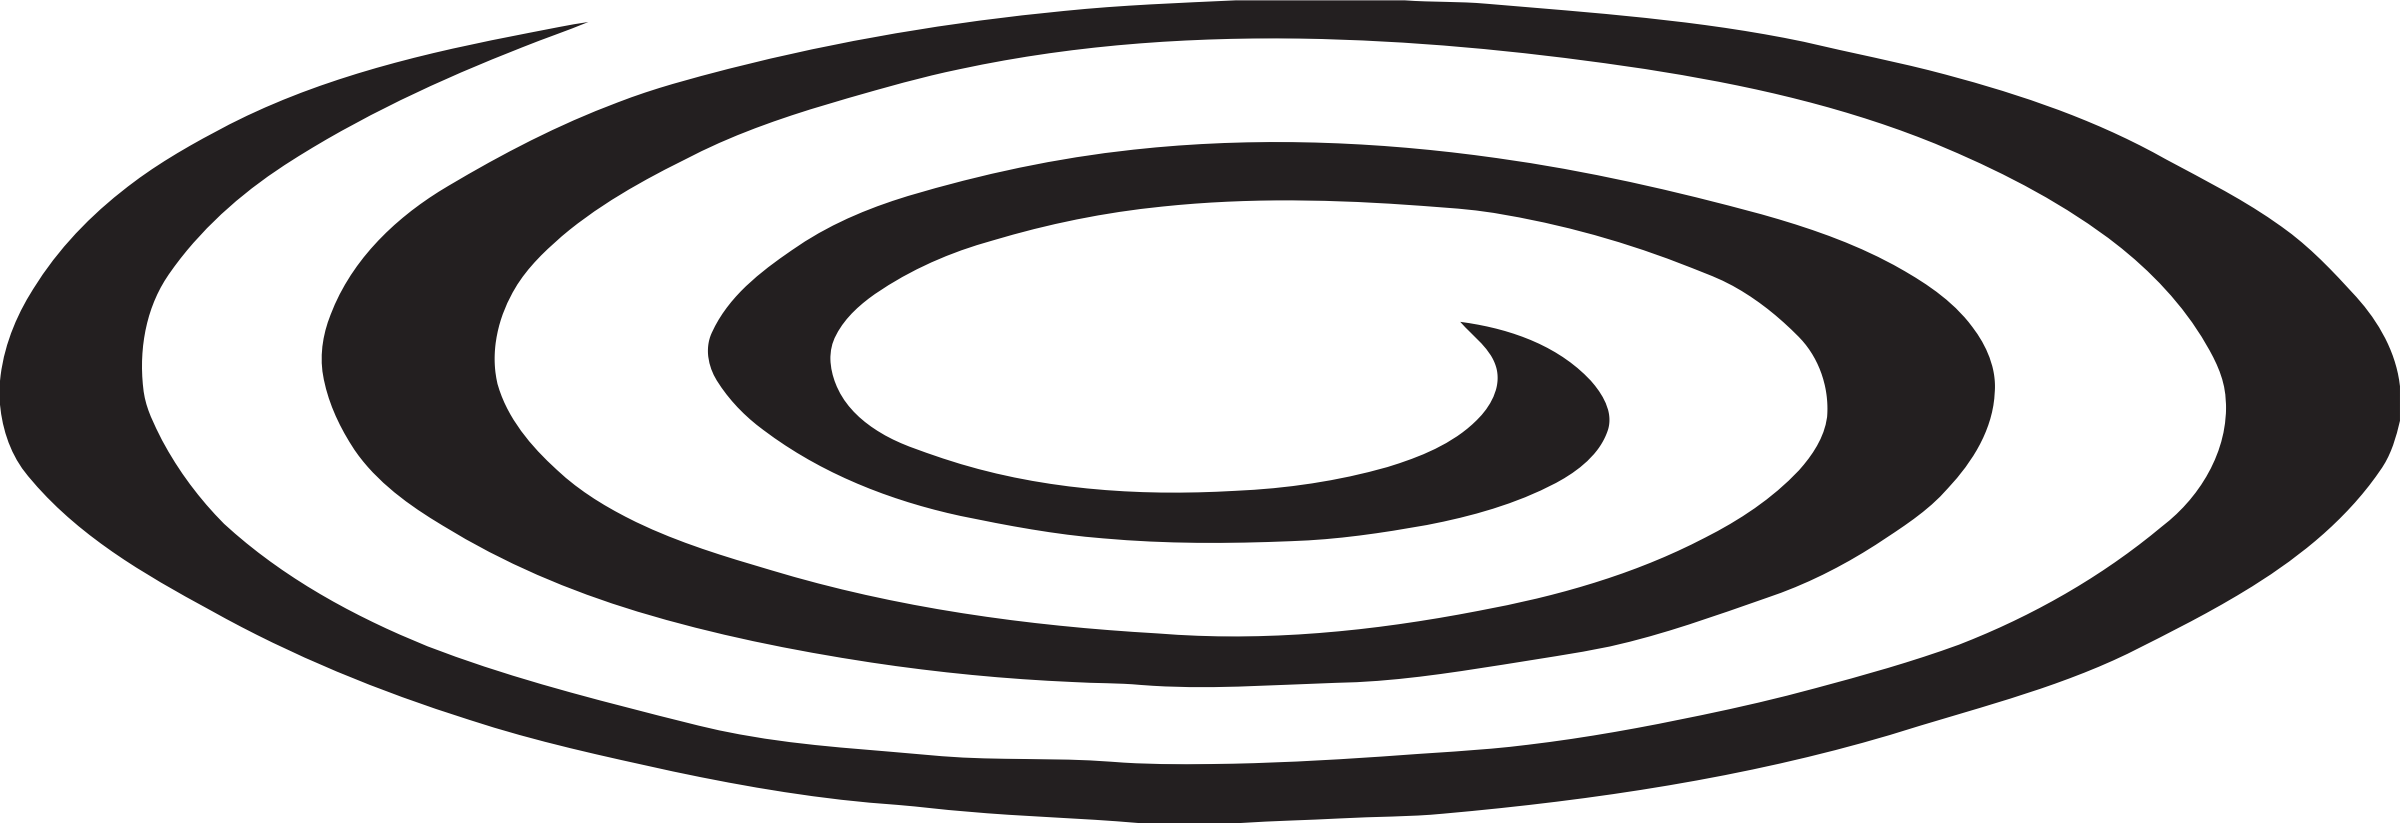 Spiral Transparent PNG